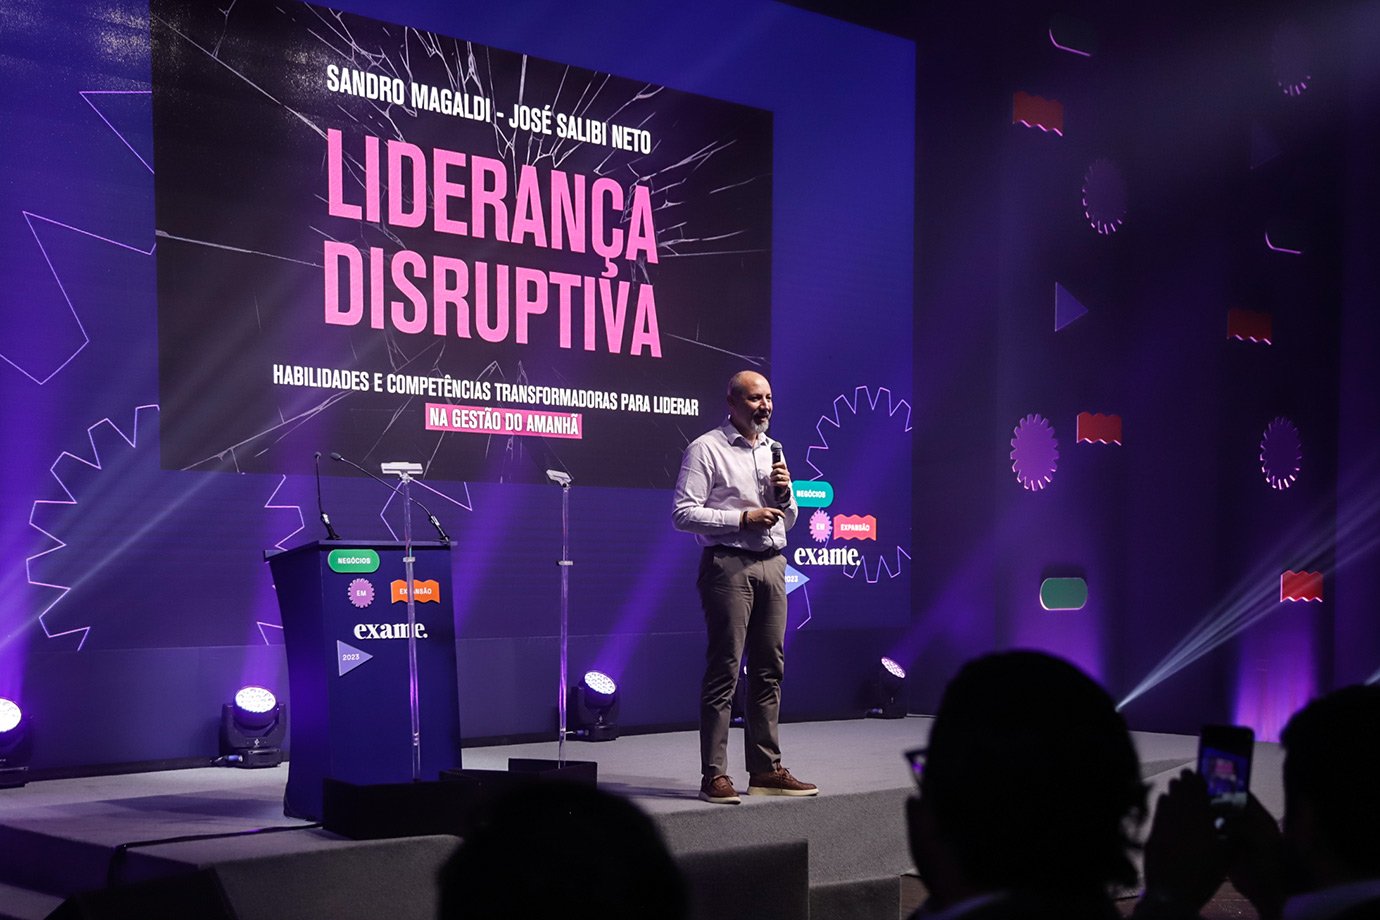 Evento Negócios em Expansão contou com painel sobre Liderança Disruptiva com Sandro Magaldi.